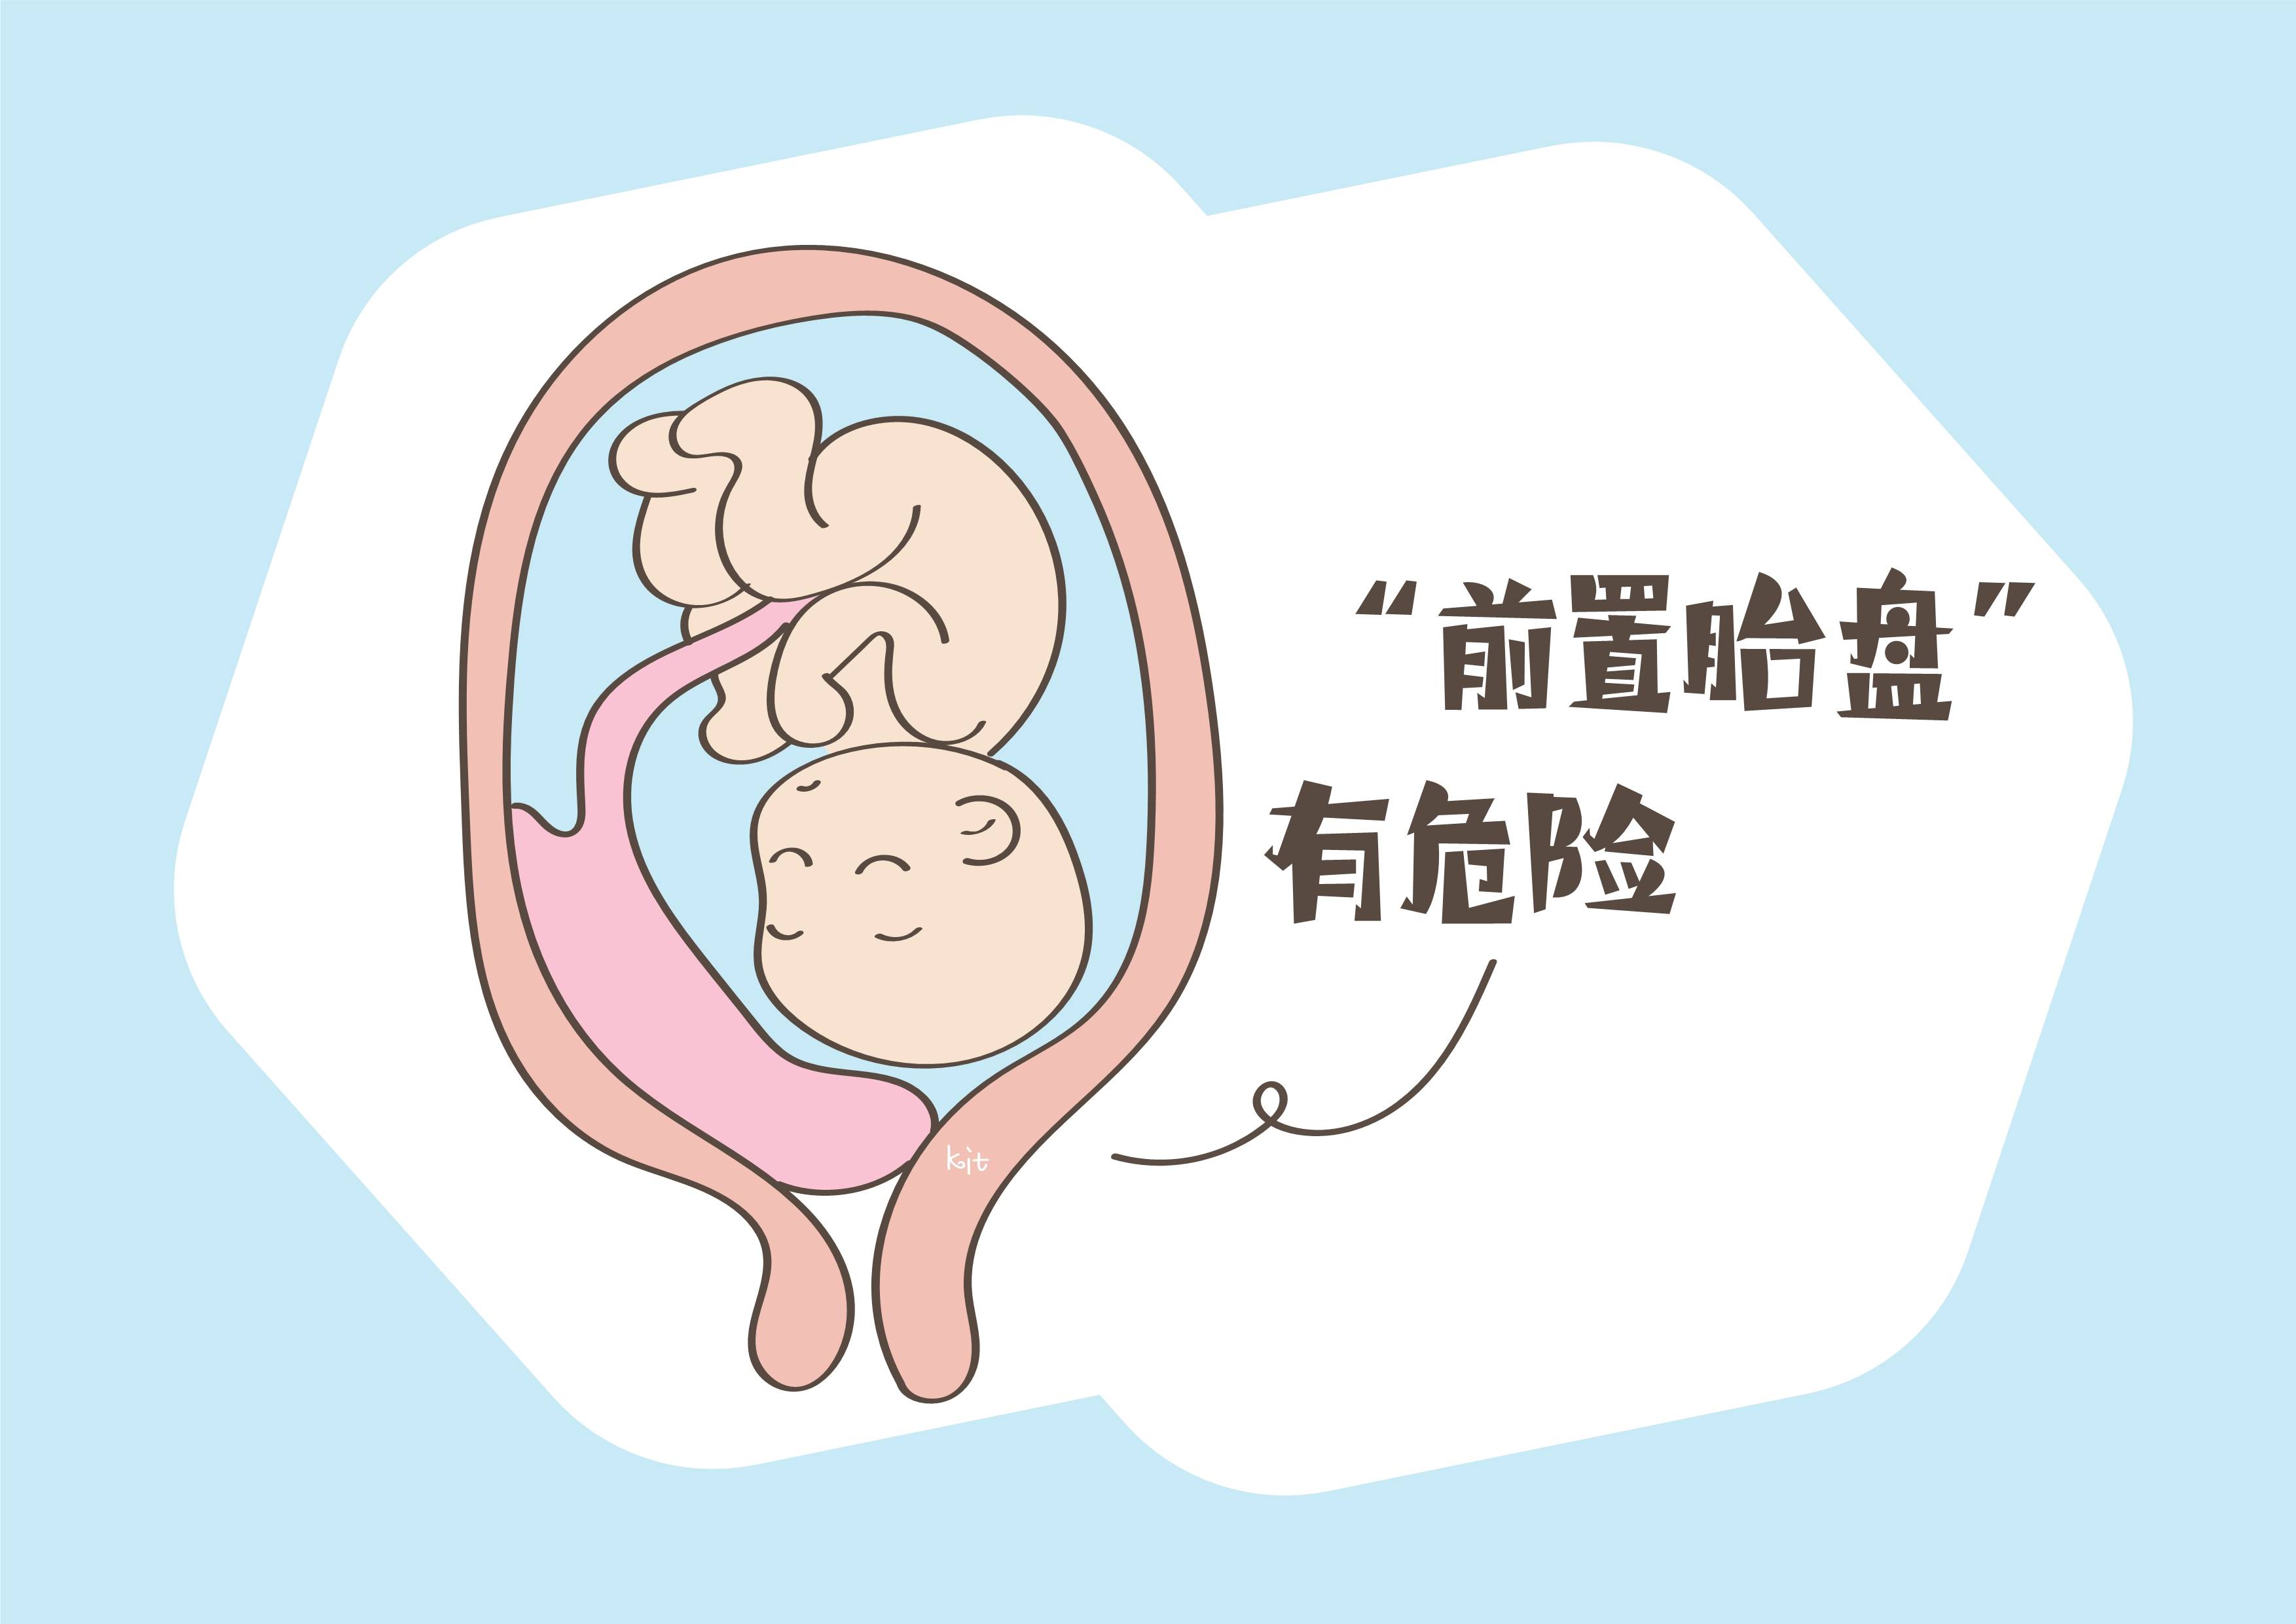 原创检出前置胎盘危险孕妈要警惕3种行为可有效预防问题发生